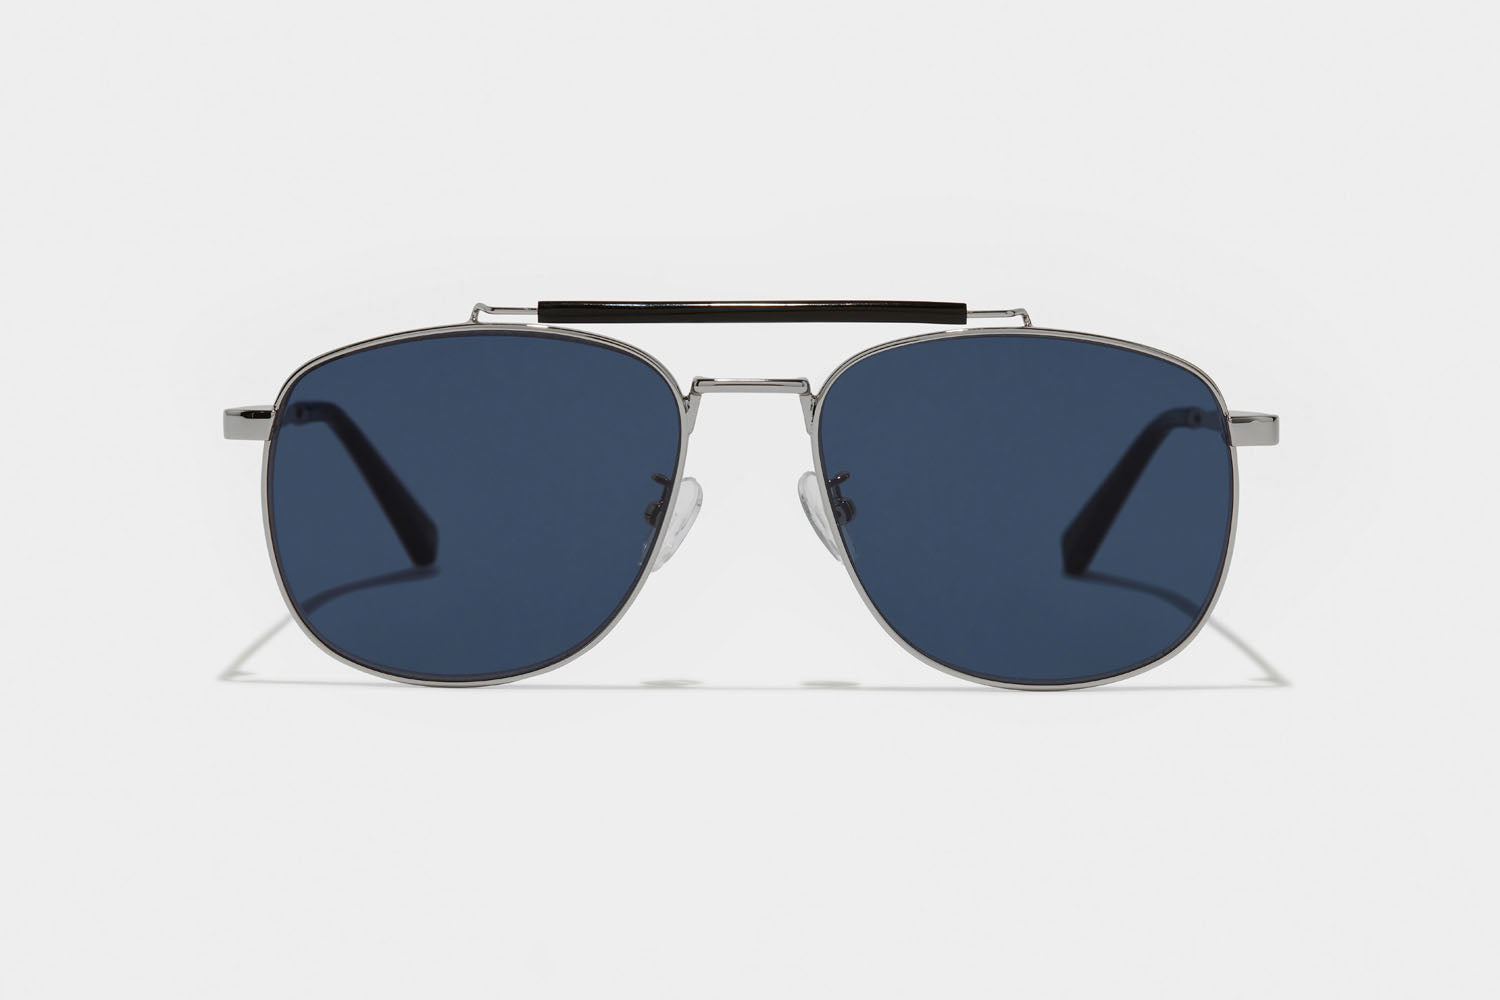 www.enkieyewear.com Bion Men’s and Women’s Sunglasses